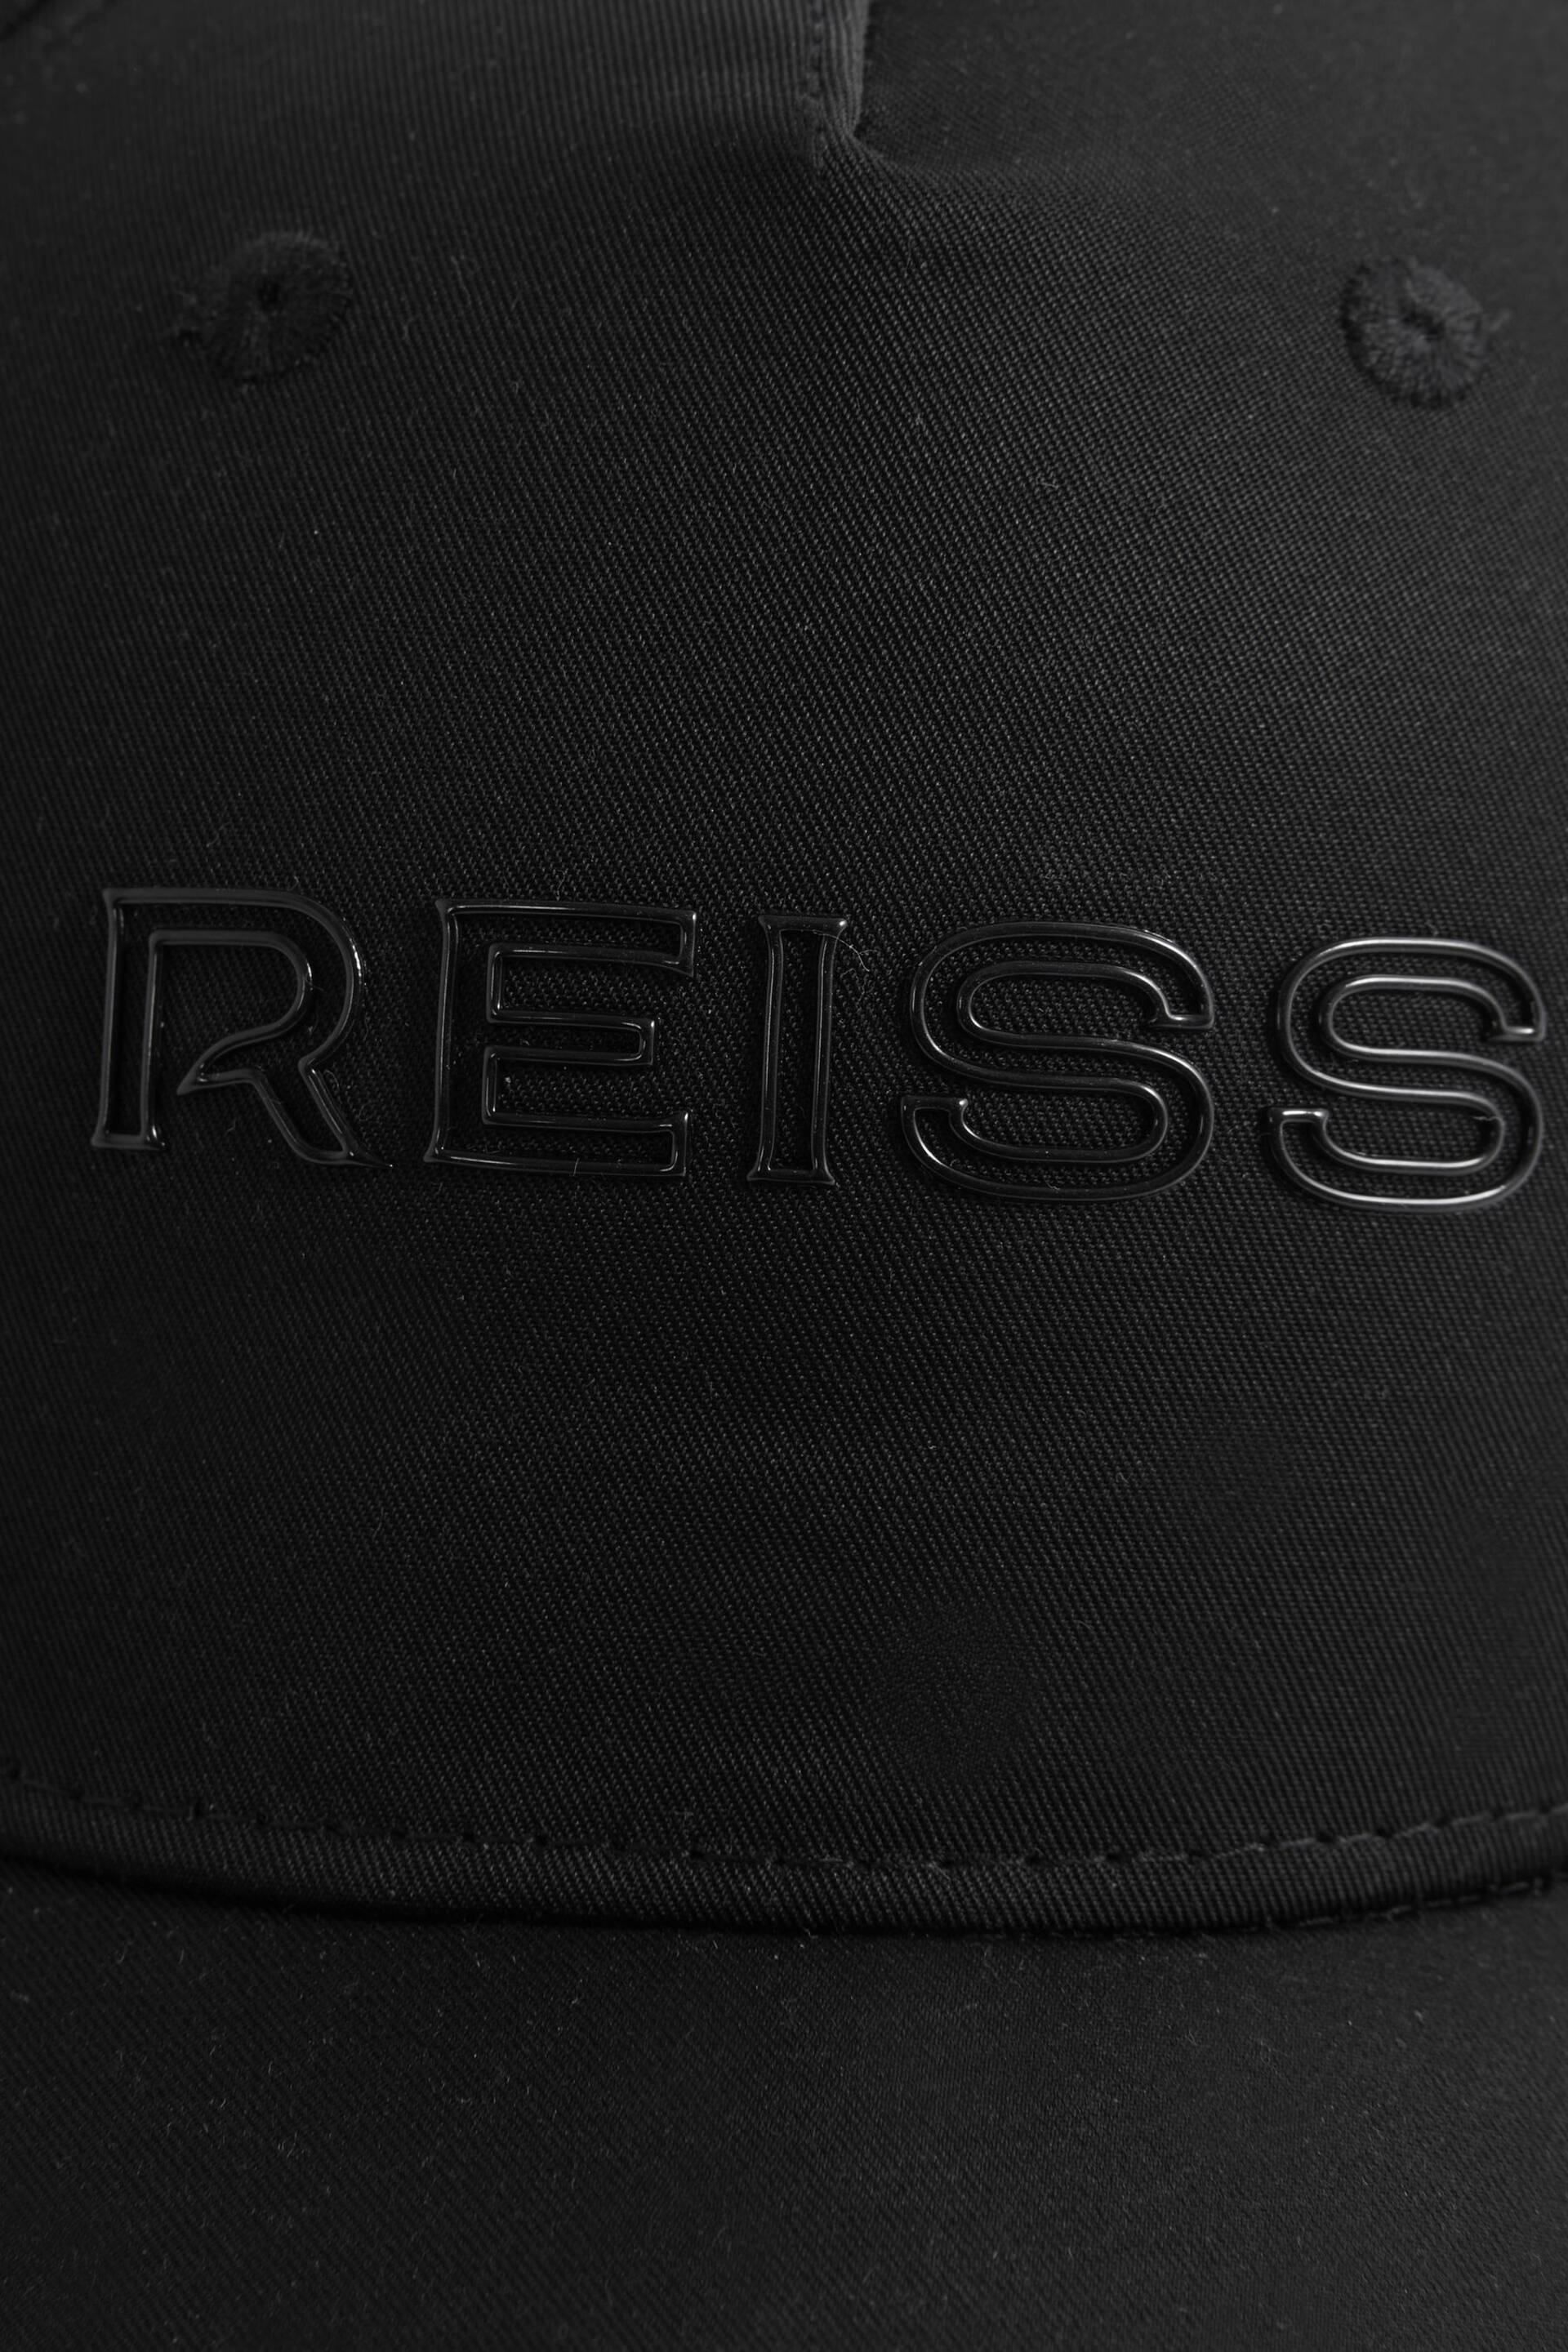 Reiss Black Blaze Logo Baseball Cap - Image 4 of 4